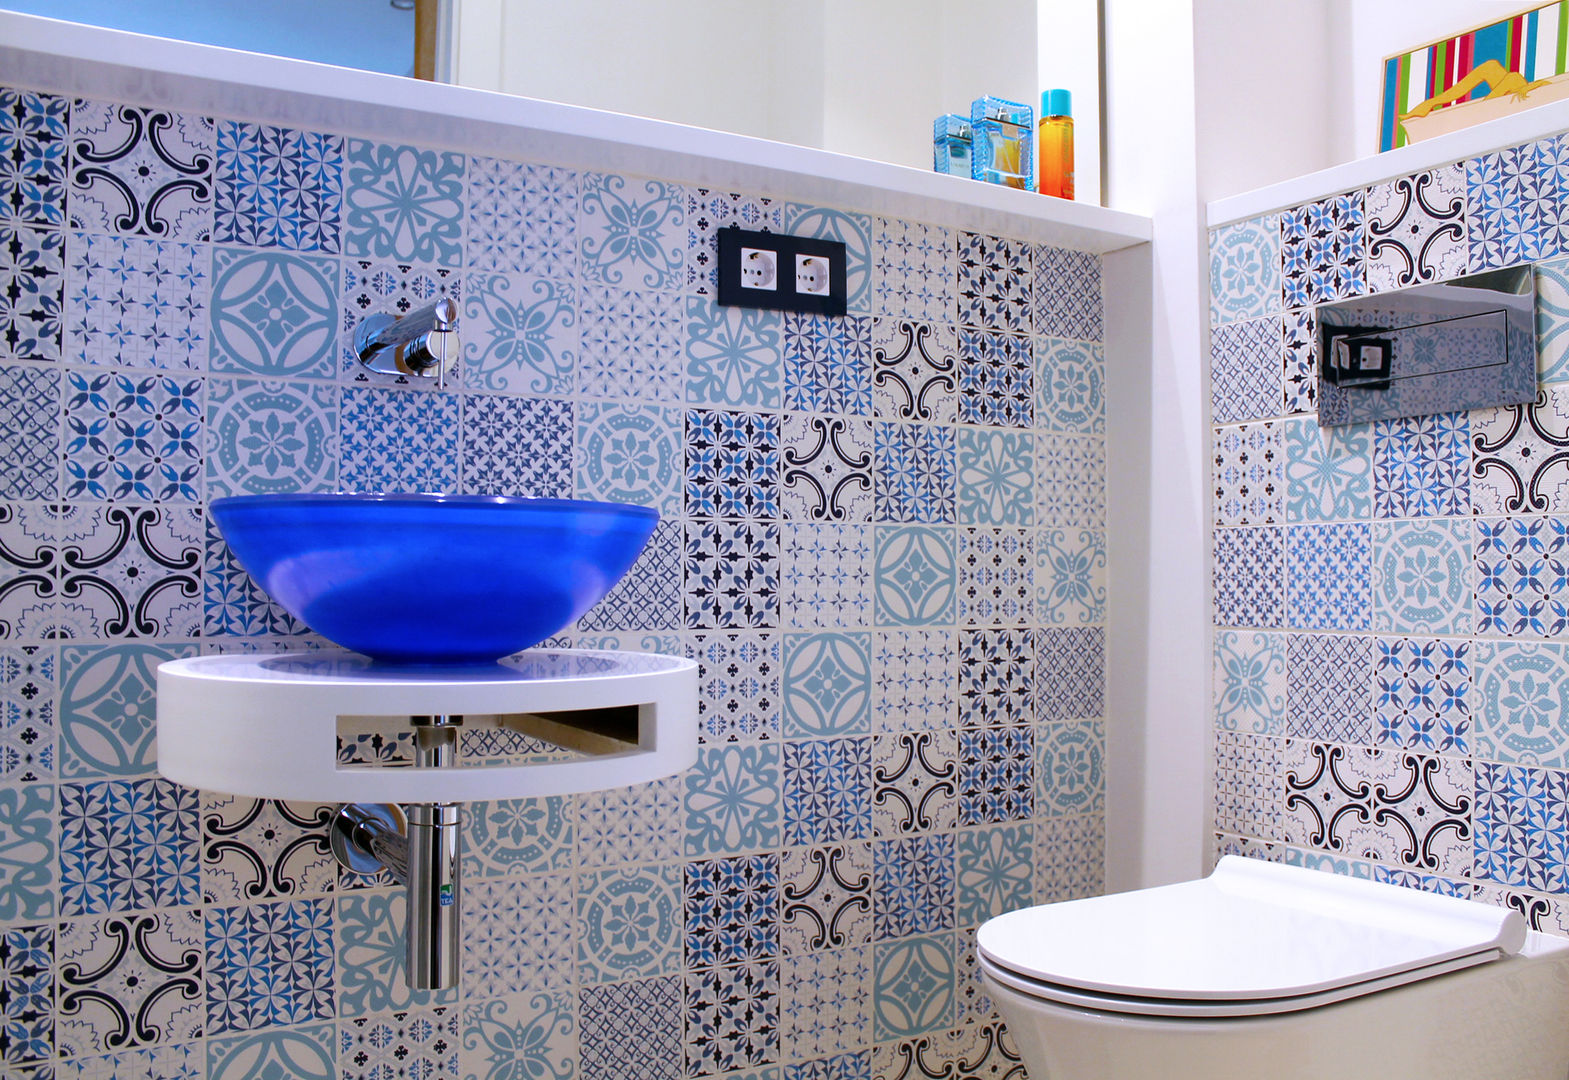 Baño suite. Eséncia mediterranea, lauraStrada Interiors lauraStrada Interiors Bathroom